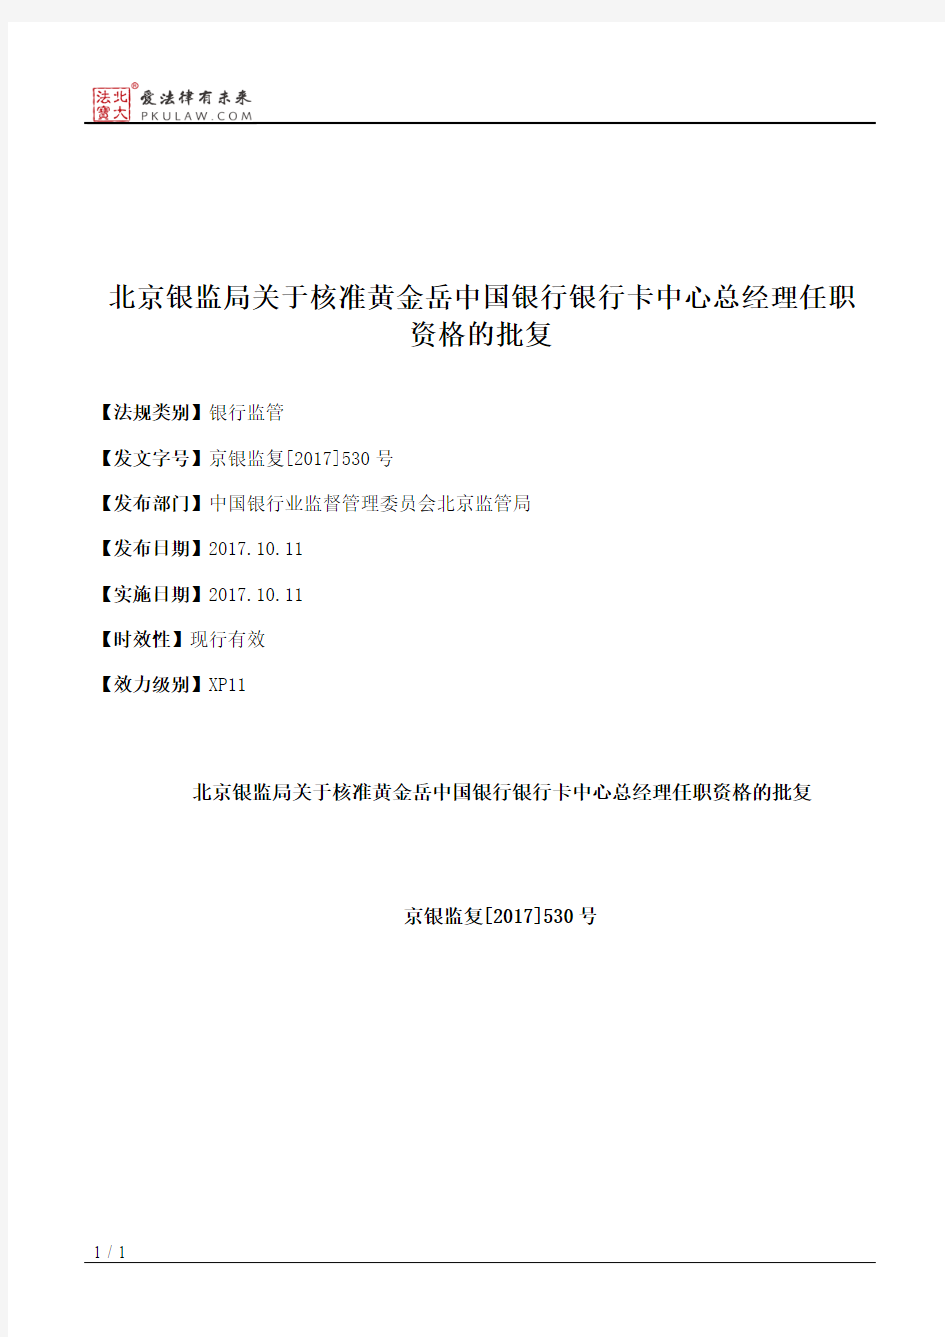 北京银监局关于核准黄金岳中国银行银行卡中心总经理任职资格的批复